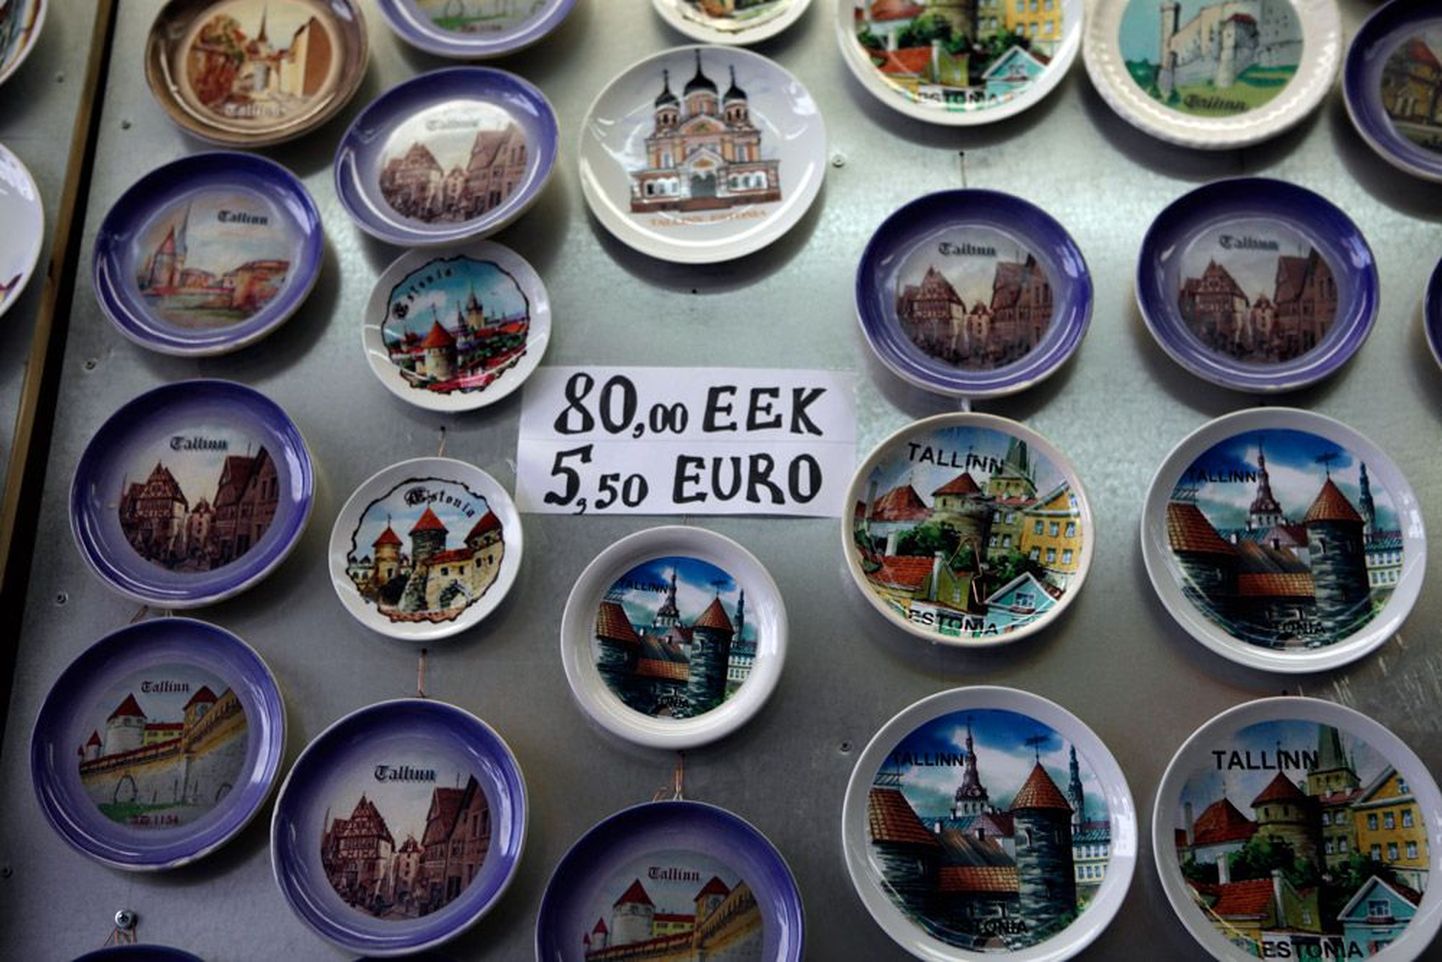 Таллиннские торговцы уже задолго до €-дня рядом с ценой в эстонских кронах стали писать цену в евро: иностранным турис­там не надо пересчитывать кроны в уже привычные им евро, а жители нашей страны привыкают к новой для нас евровалюте.